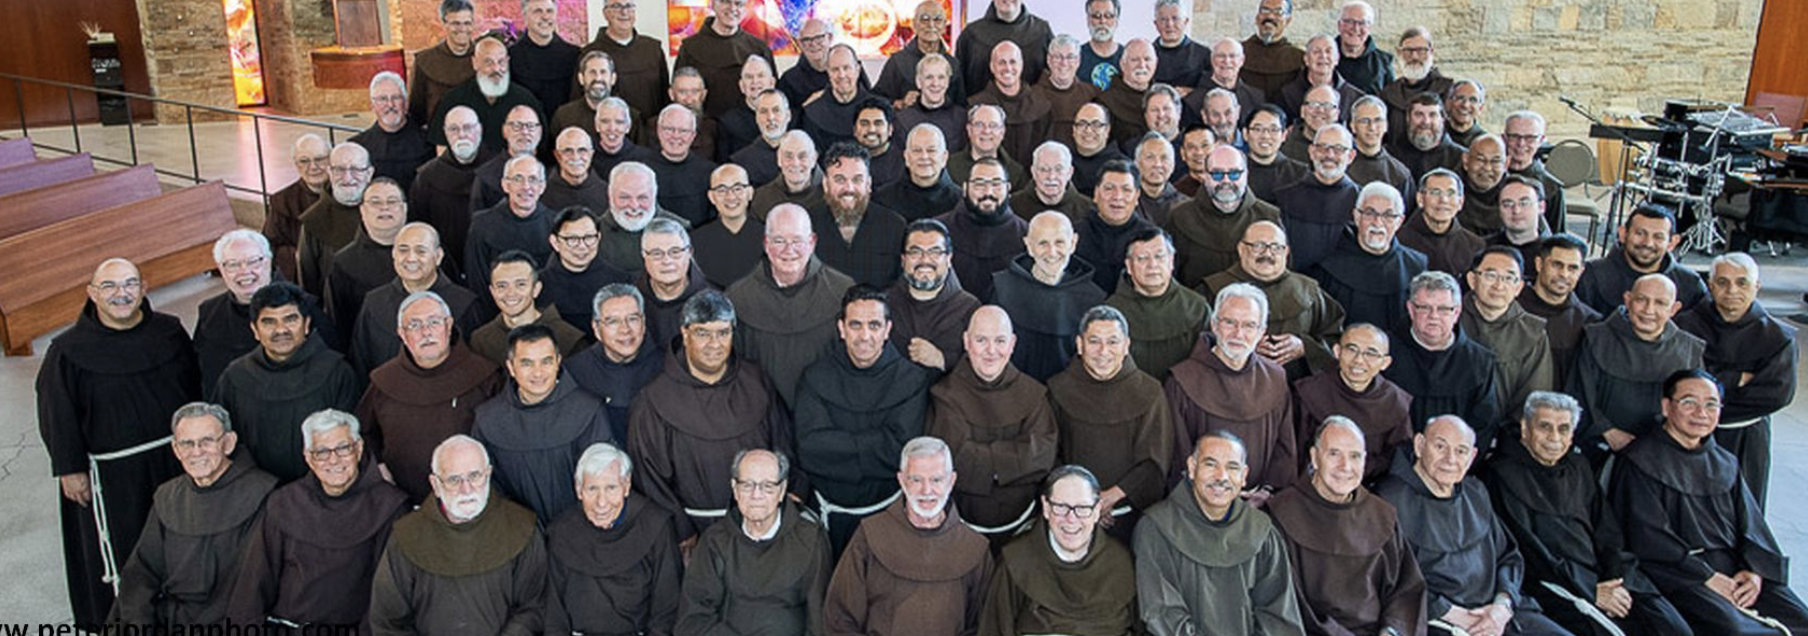 Franciscan Friars Santa Barbara Horowitz Law